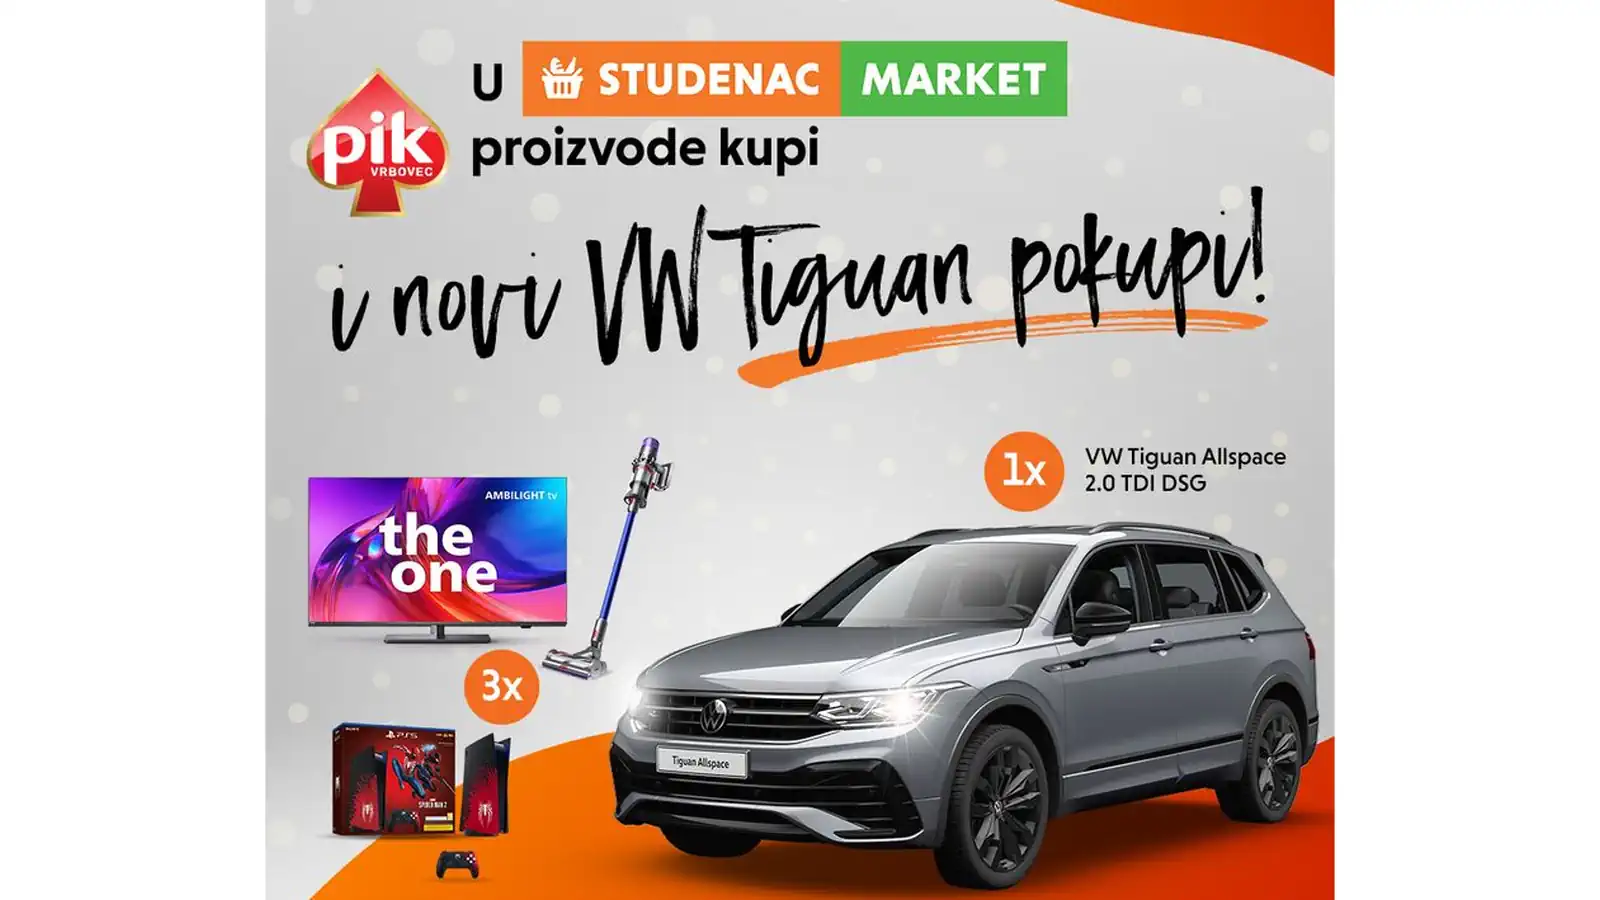 Studenac nagradna igra: U Studencu PIK proizvode kupi i automobil VW Tiguan pokupi!